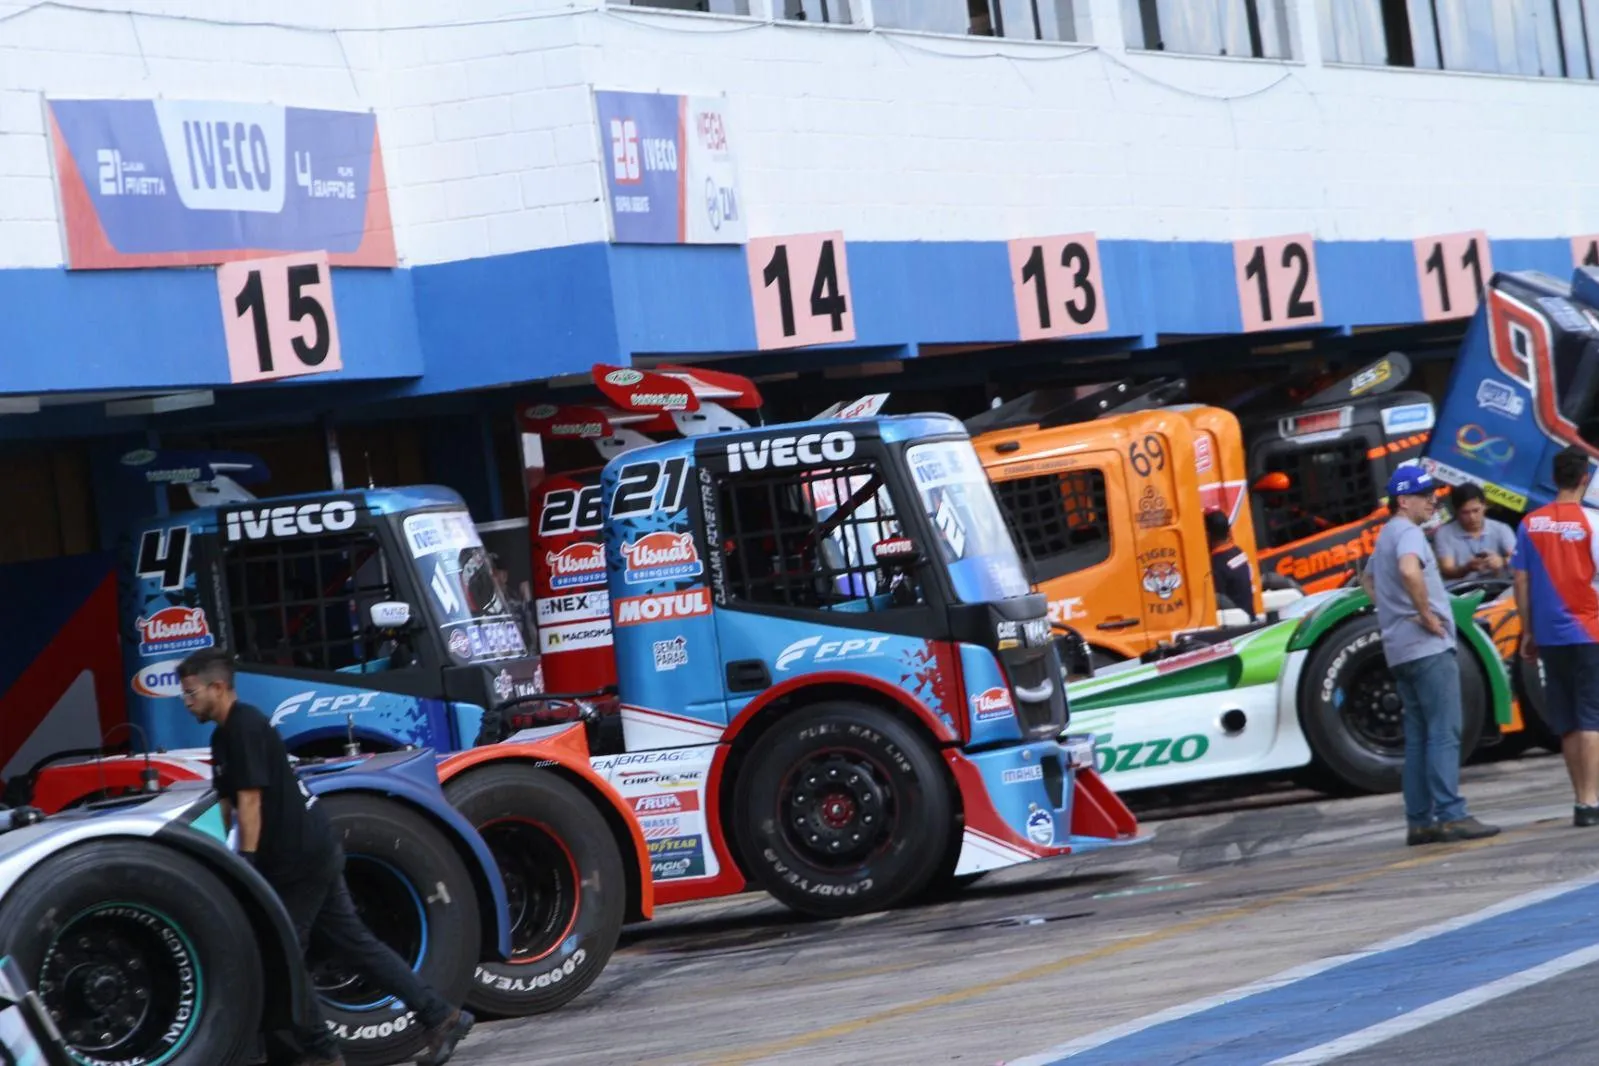 NASCAR Brasil é nova categoria do automobilismo nacional e estreia